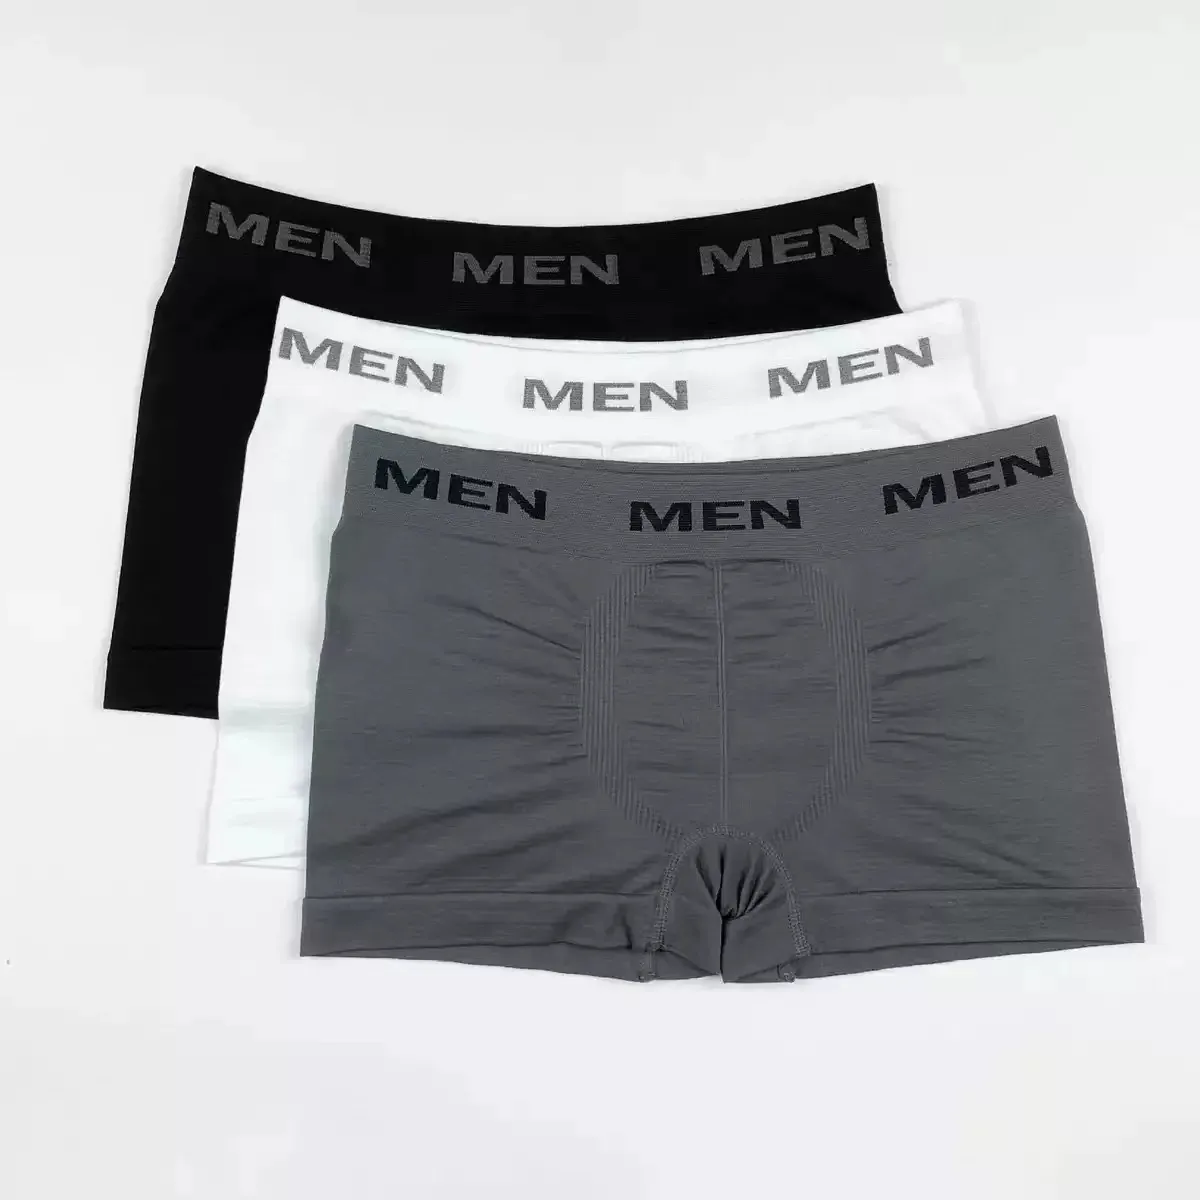 OEM kunden spezifisches Design Herren weiße kurze Unterwäsche elastisch Reine Farbe nahtlos glatt Mix Farbe Unterwäsche Boxer WB0010